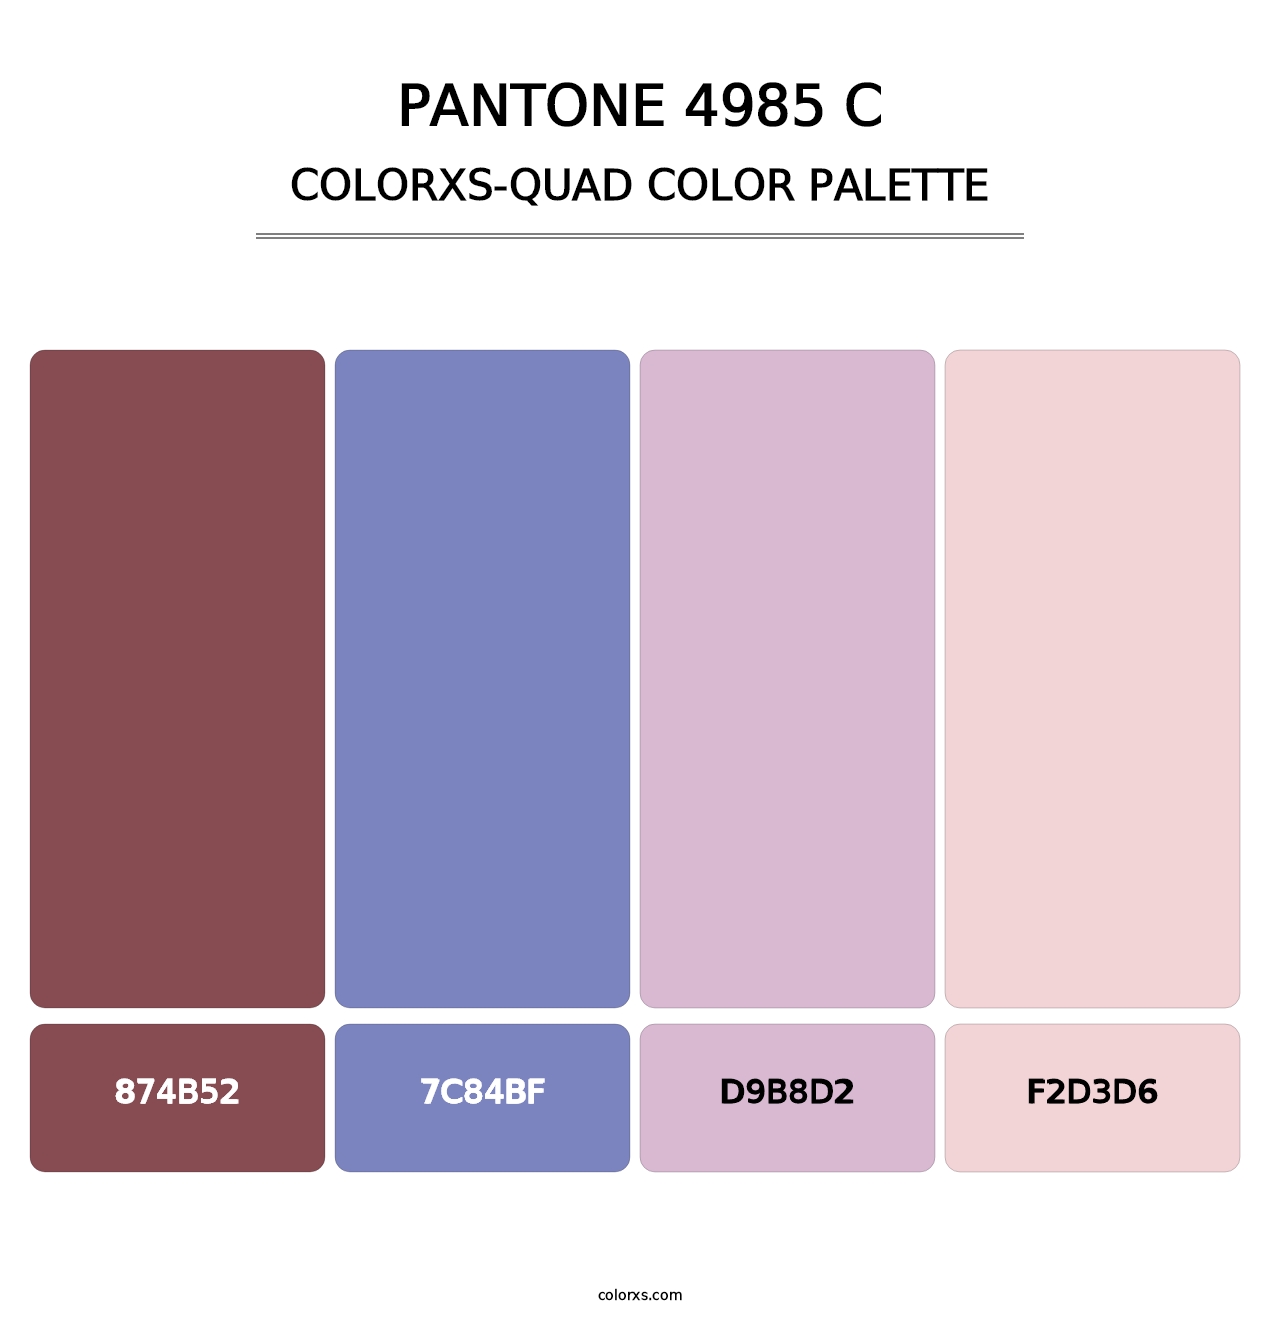 PANTONE 4985 C - Colorxs Quad Palette